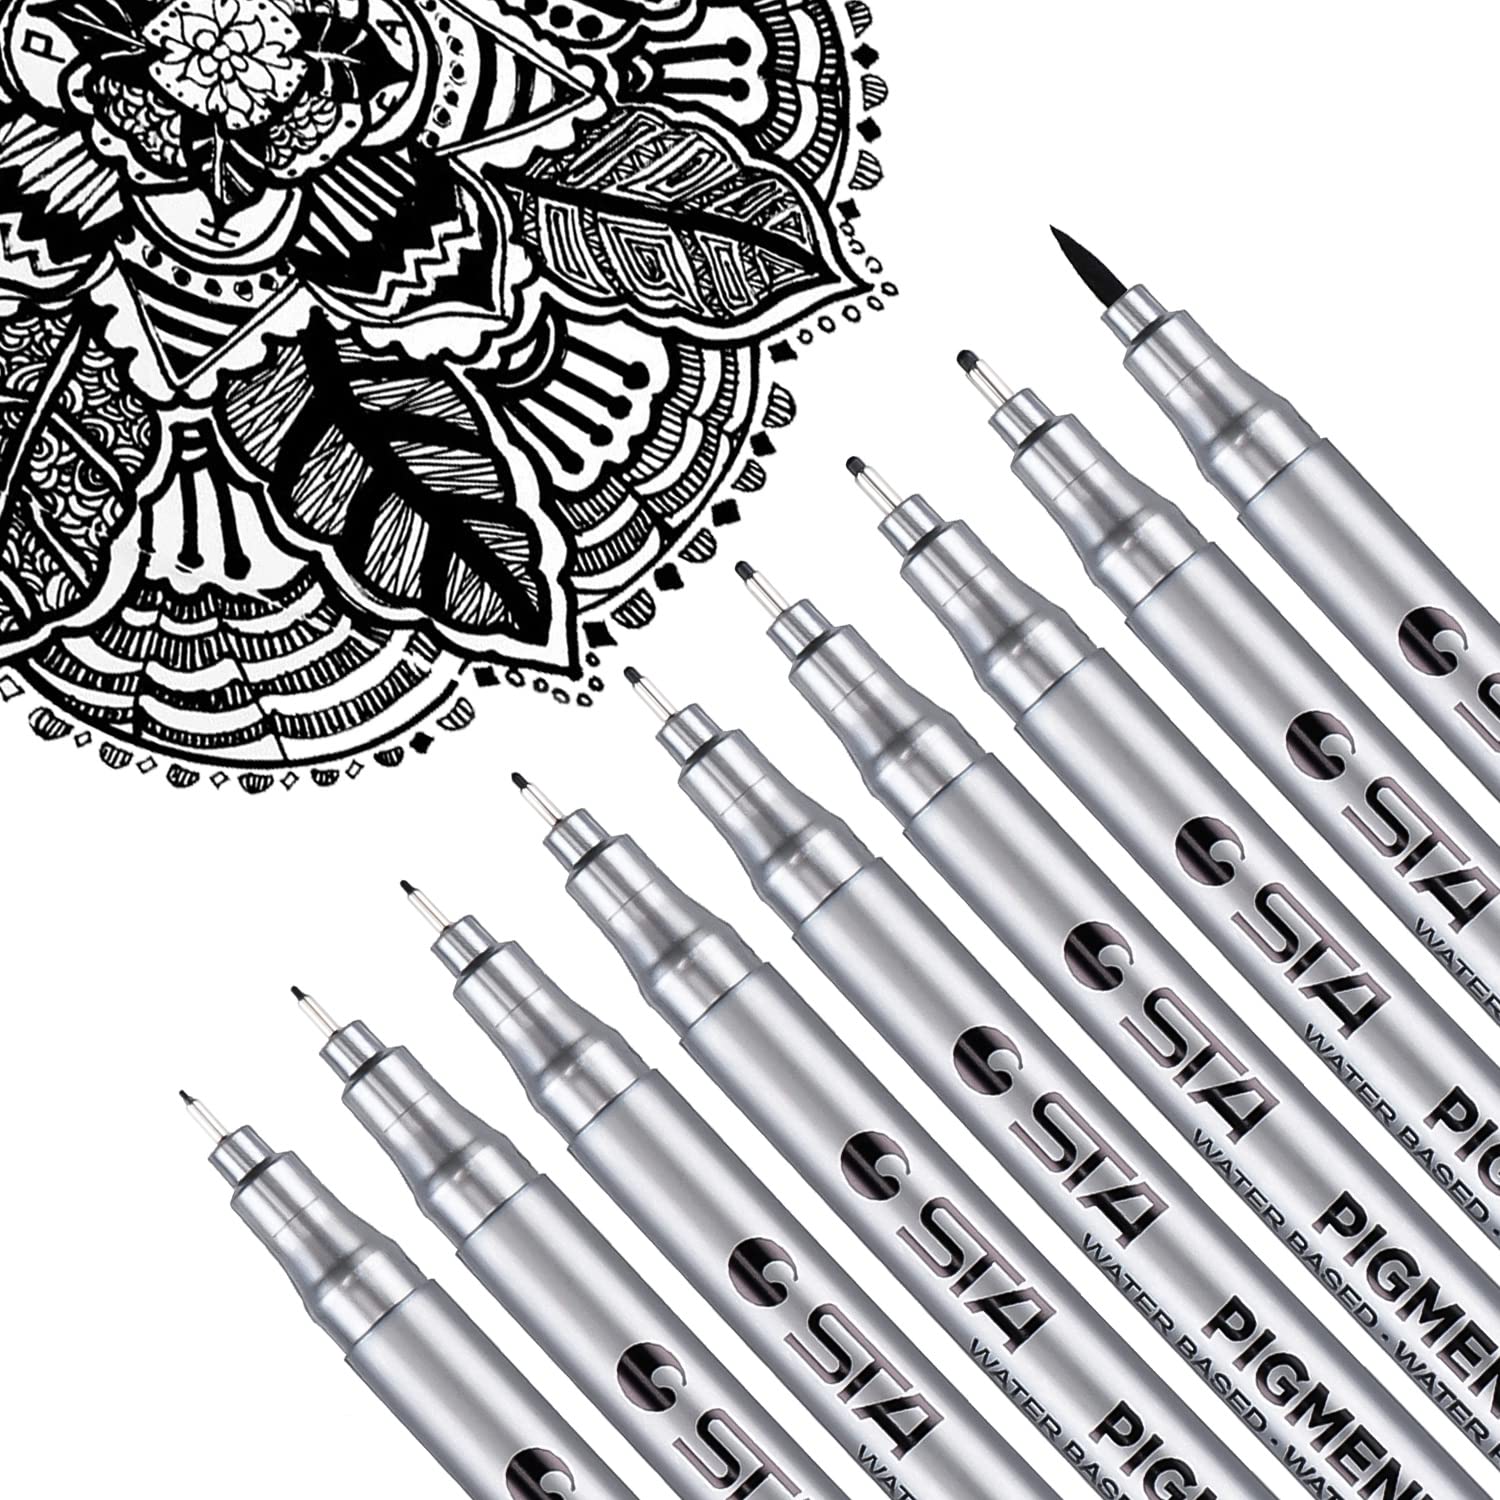 Black Fine Tip Inking Pens For Drawing Archival Ink Pen Fineliner